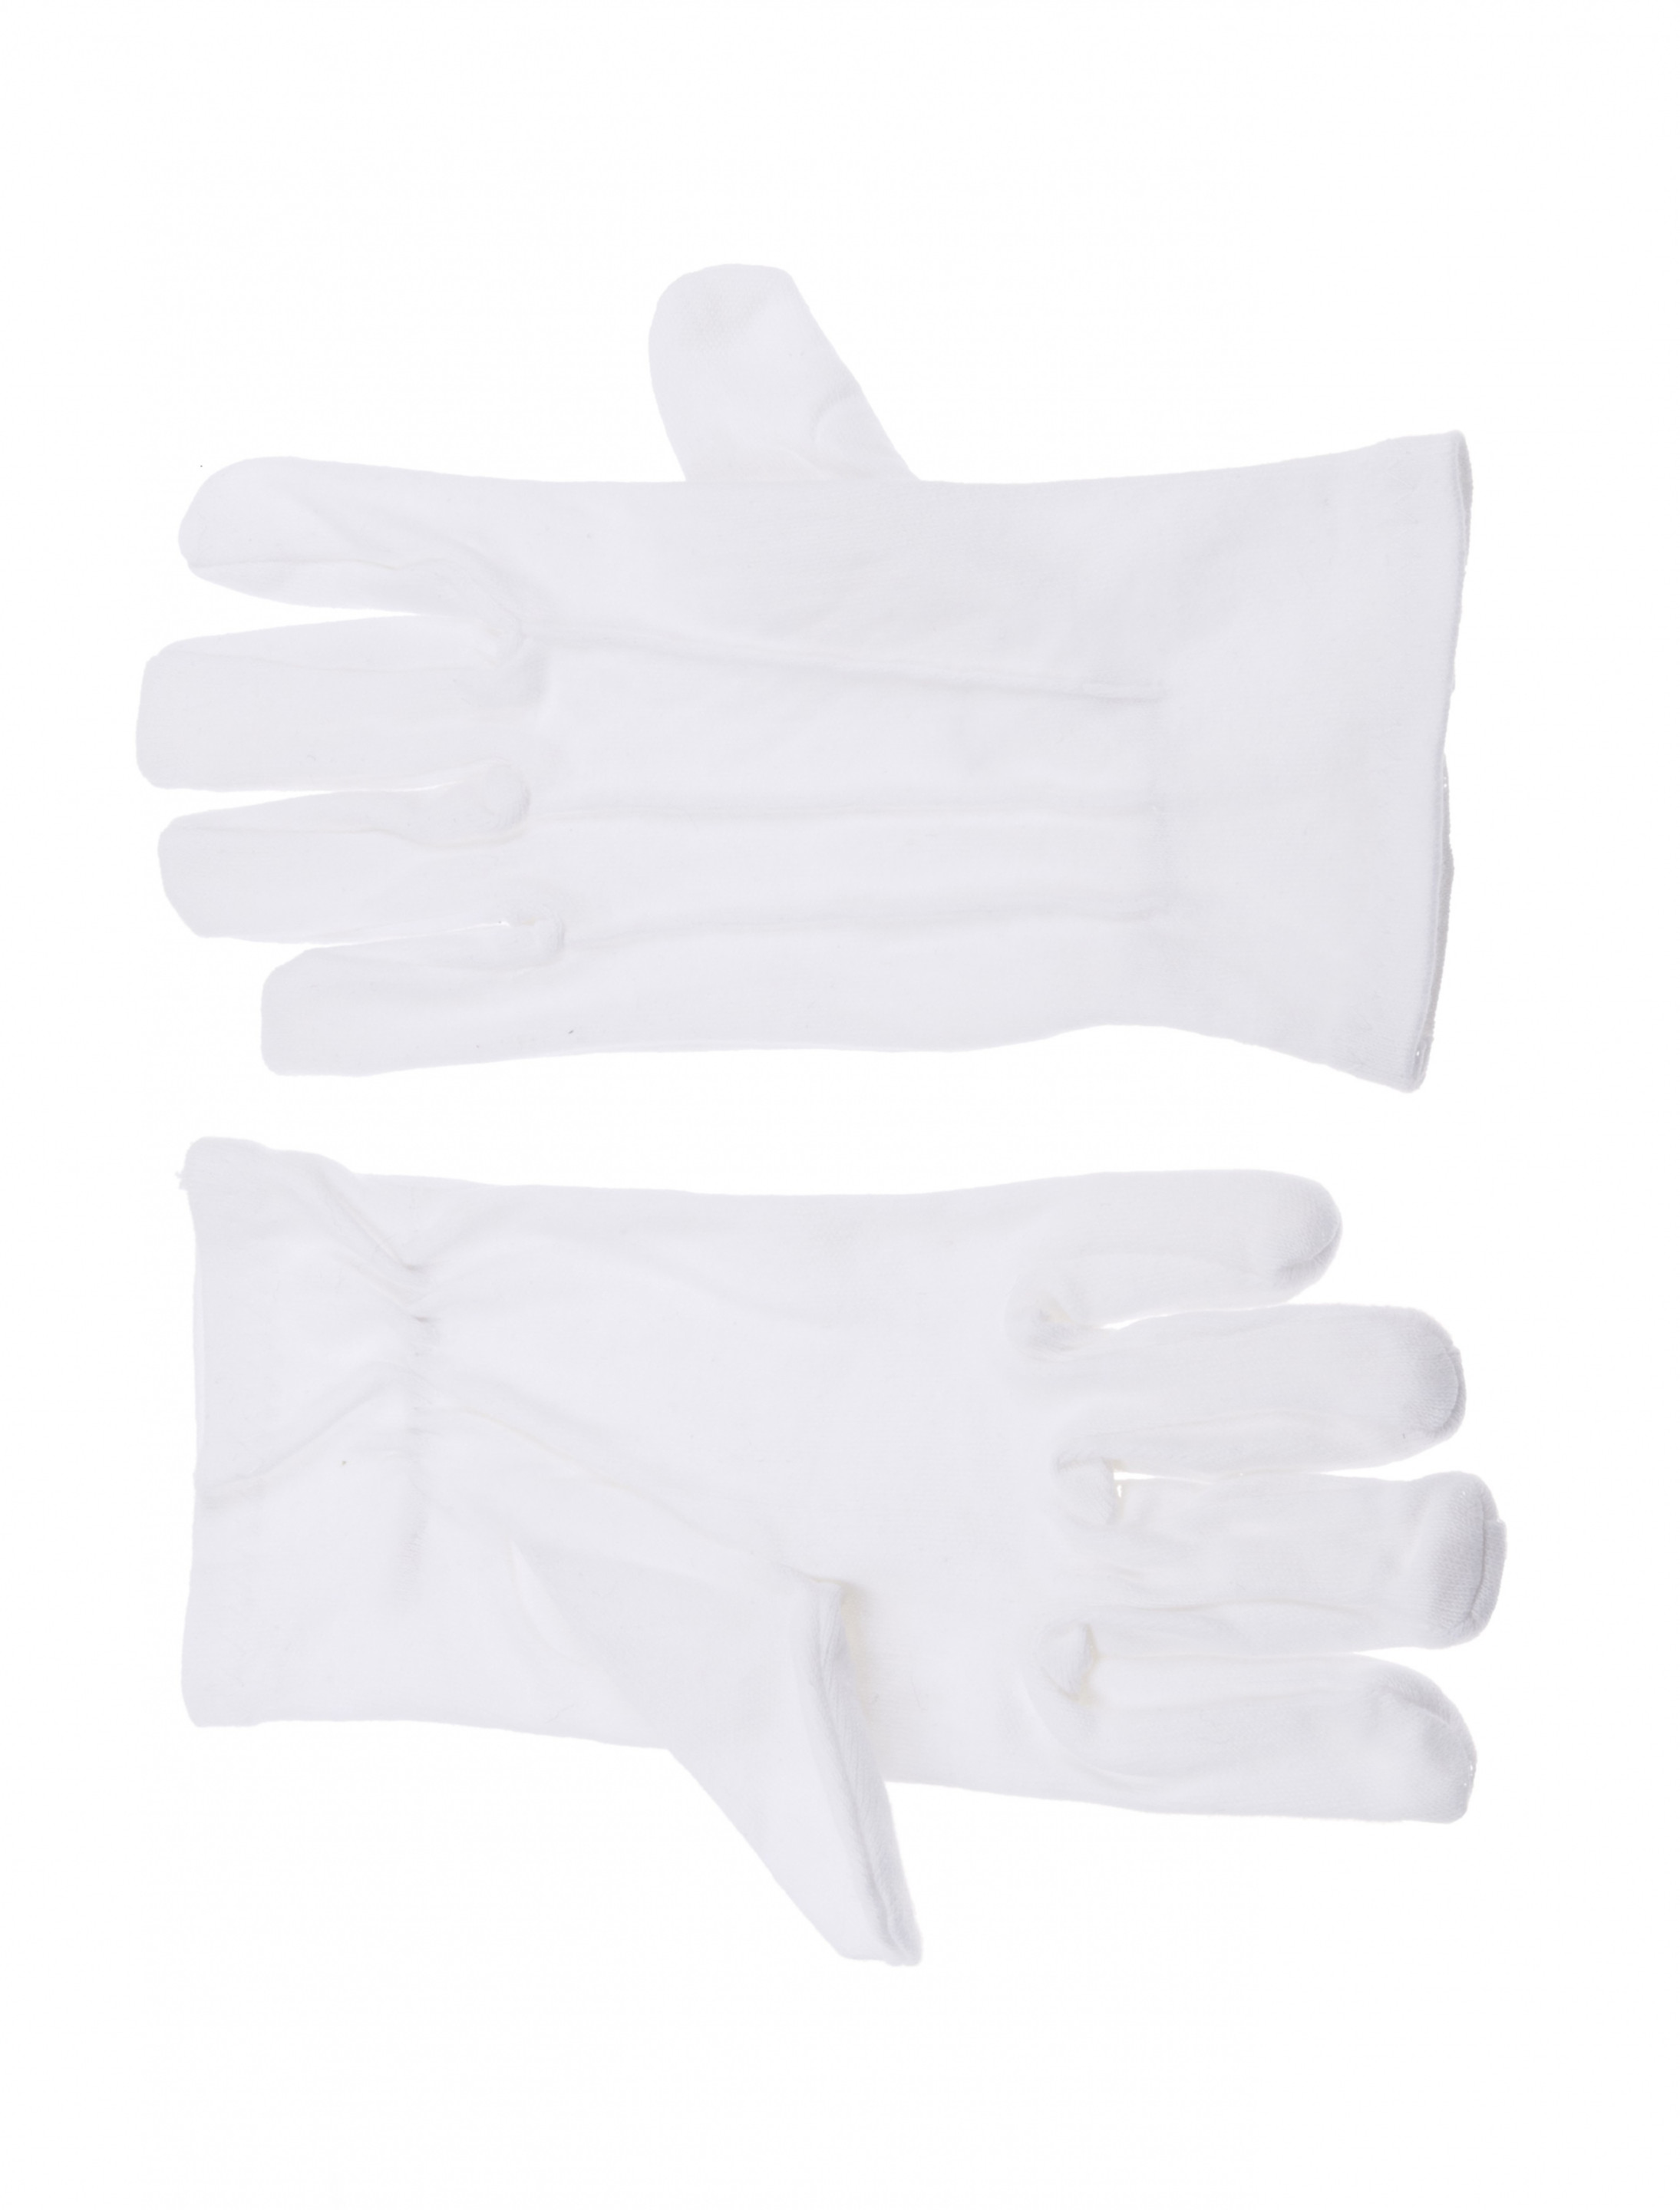 Handschuhe Baumwolle mit Naht weiß L